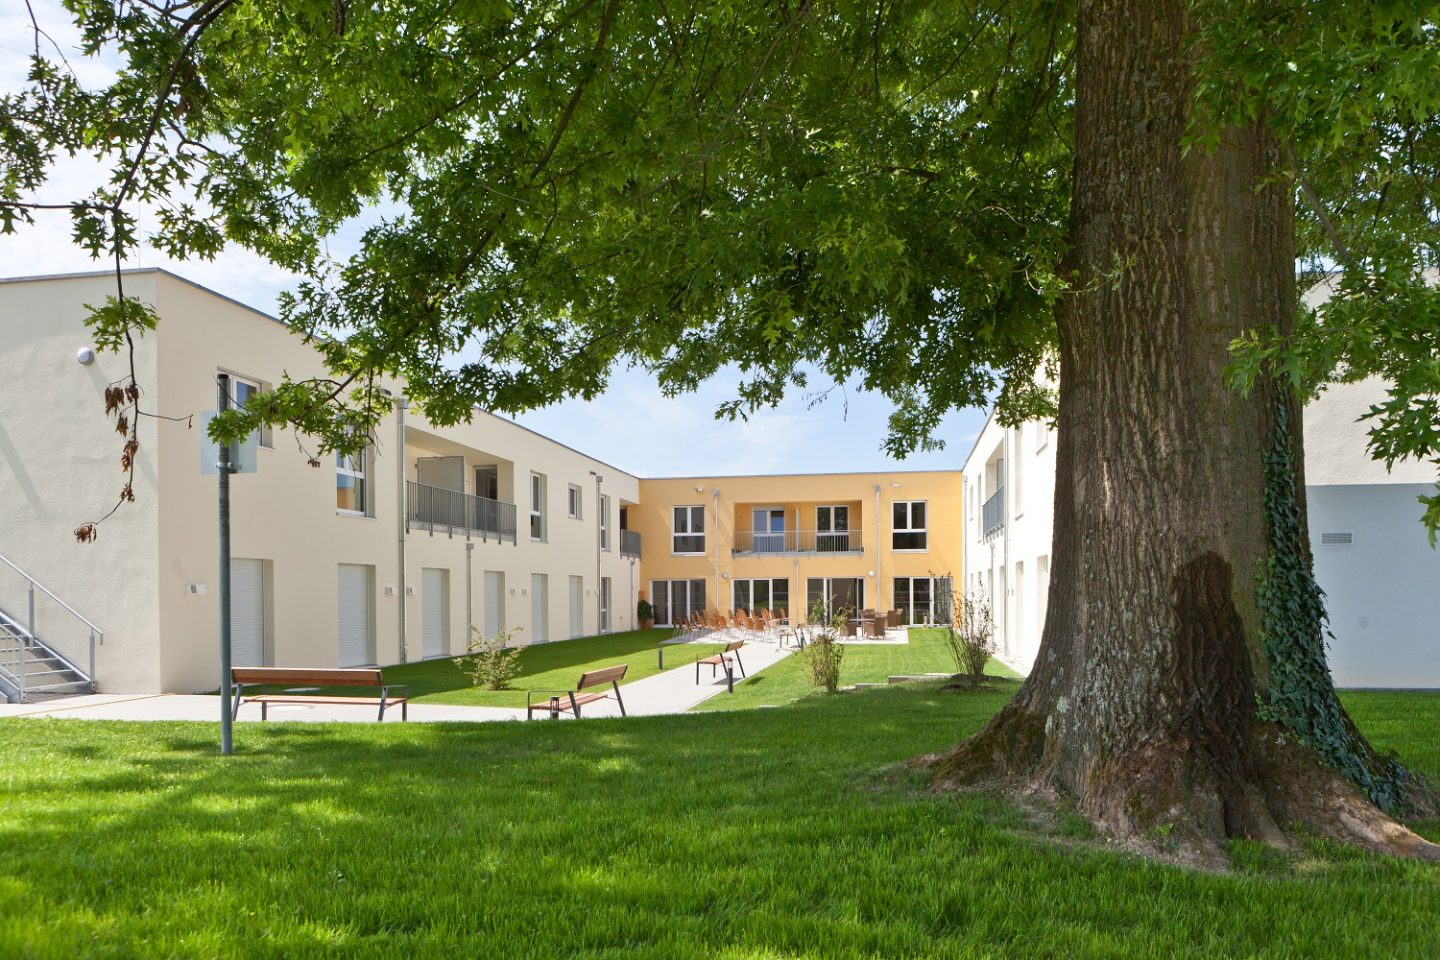 Schön gestaltete Außenanlagen laden auch zu einem Spaziergang um das Pflegezentrum Lichtenau-Ulm ein